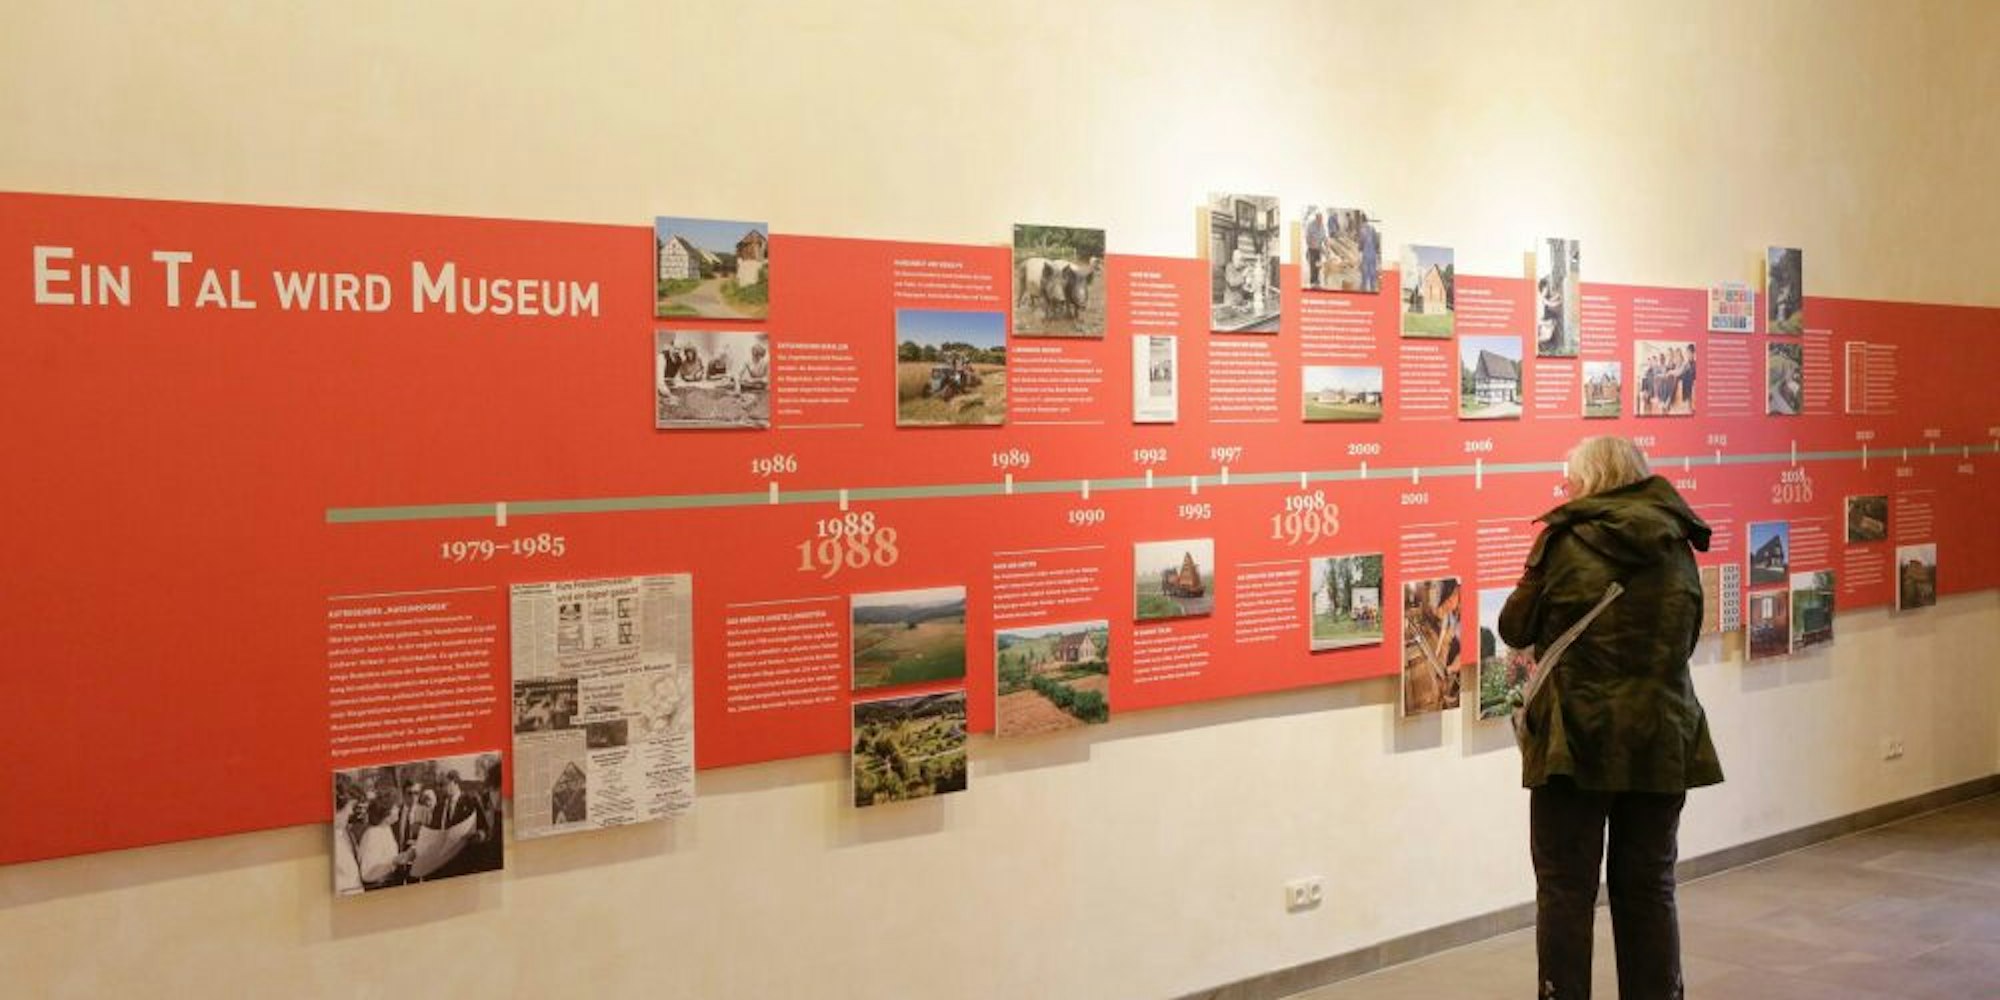 Die Ausstellung beleuchtet die Entstehung des Museums und gibt Einblicke in die Arbeit.